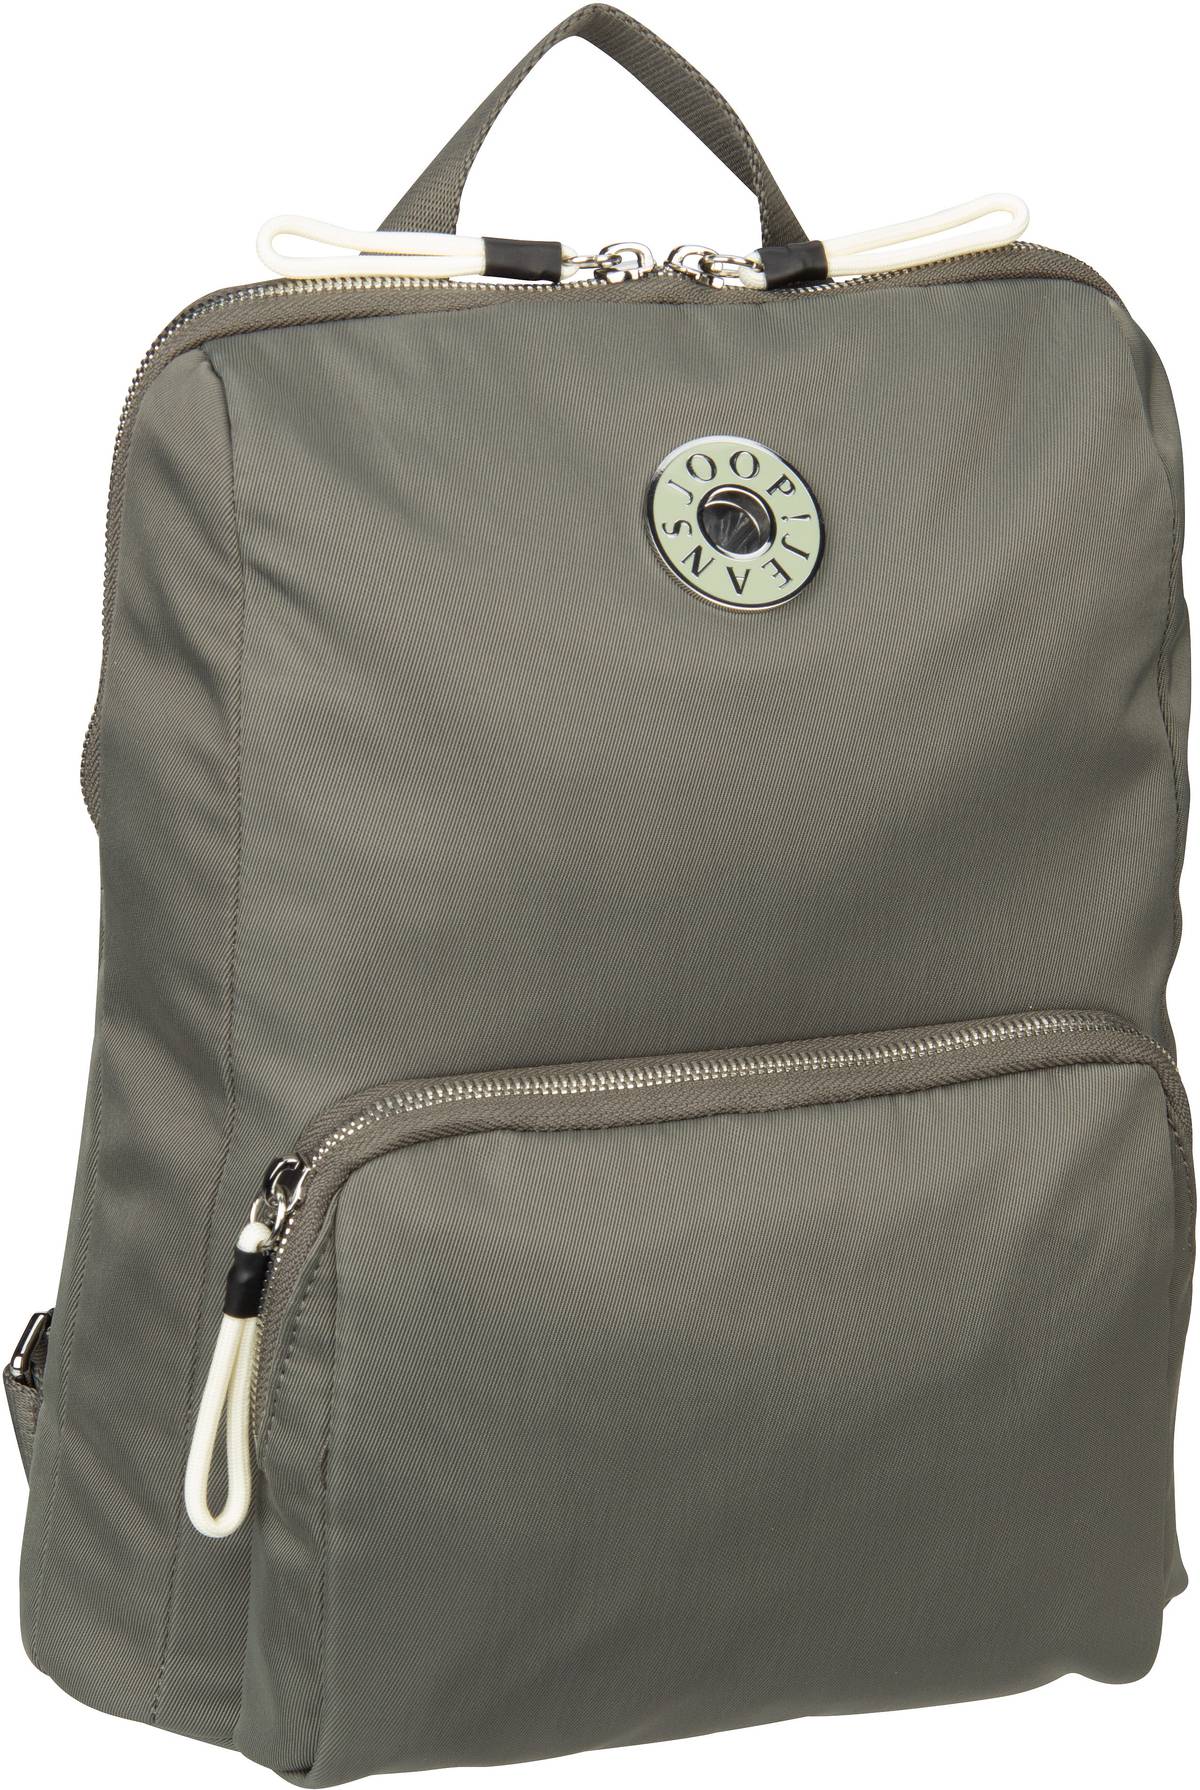 Joop Joop Giocoso Nivia Backpack MVZ in Grau (12 Liter), Rucksack / Backpack